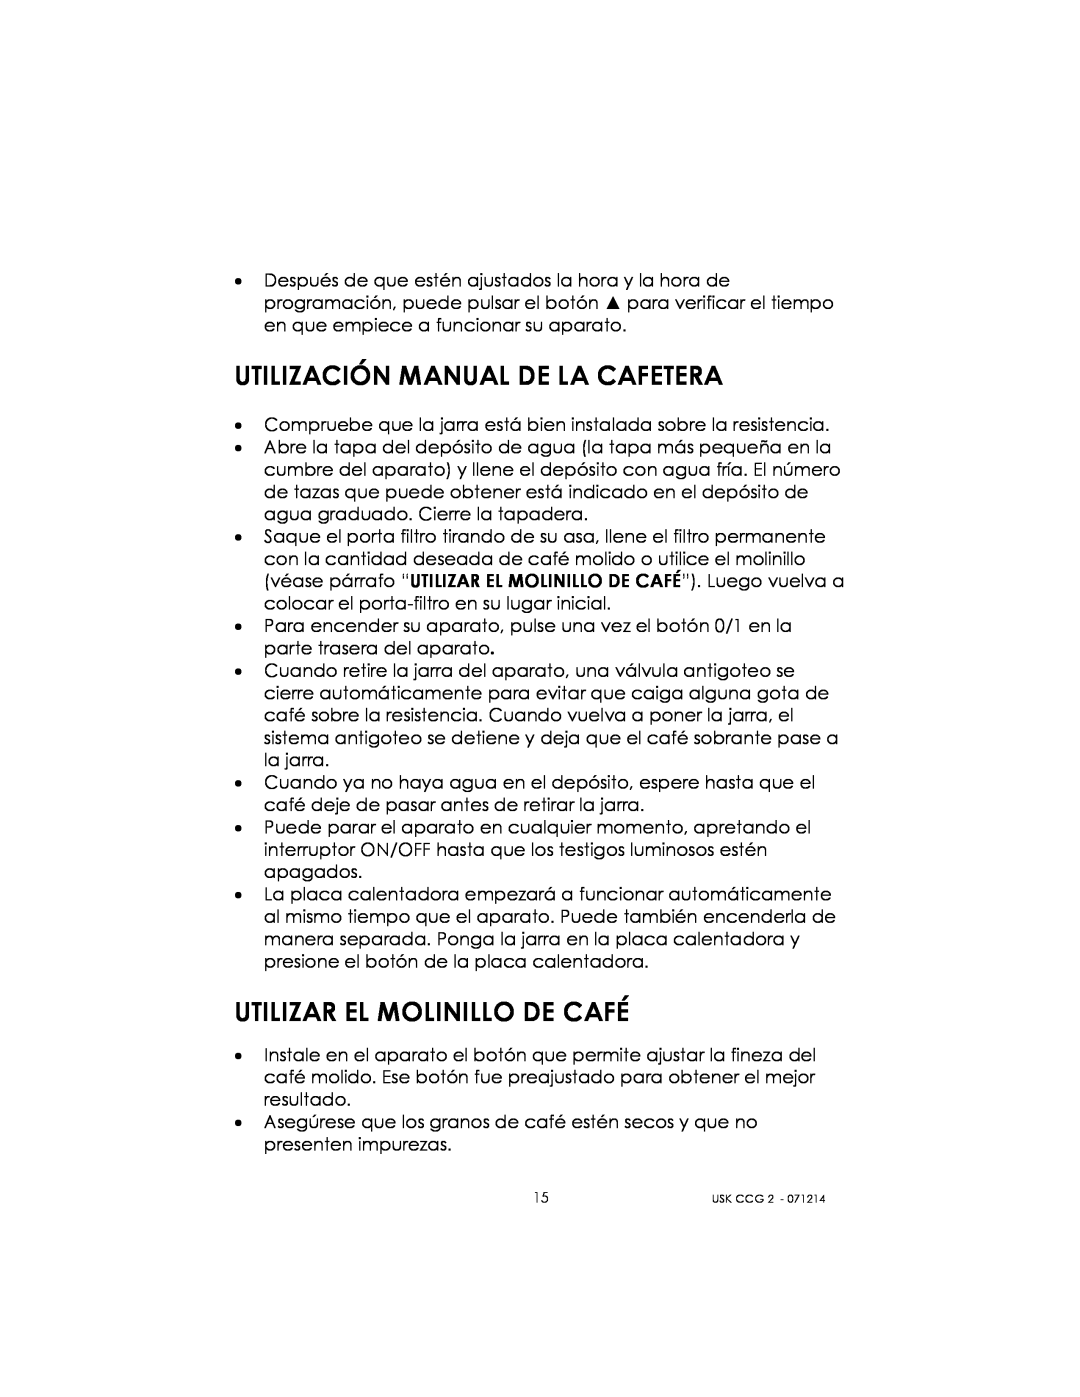 Kalorik USK CCG 2 manual Utilización Manual De La Cafetera, Utilizar El Molinillo De Café 